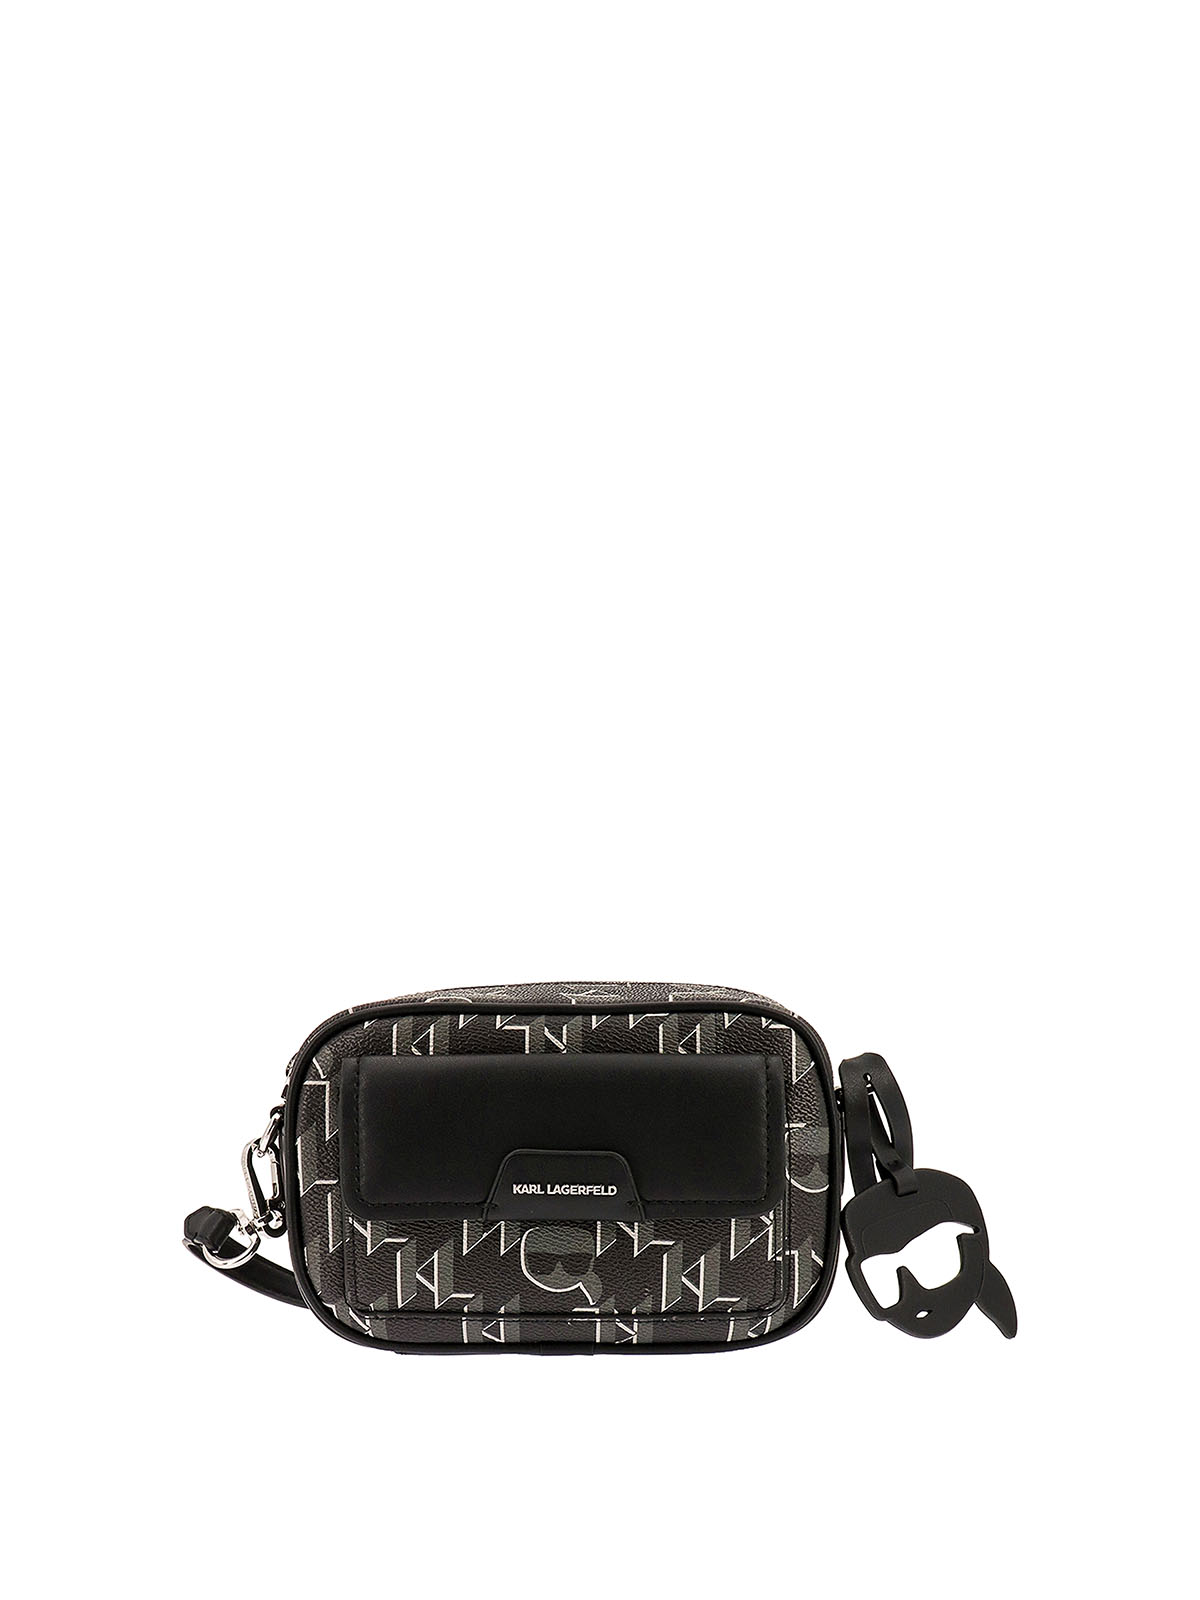 Karl Lagerfeld Monogram Leather Shoulder Strap - Black